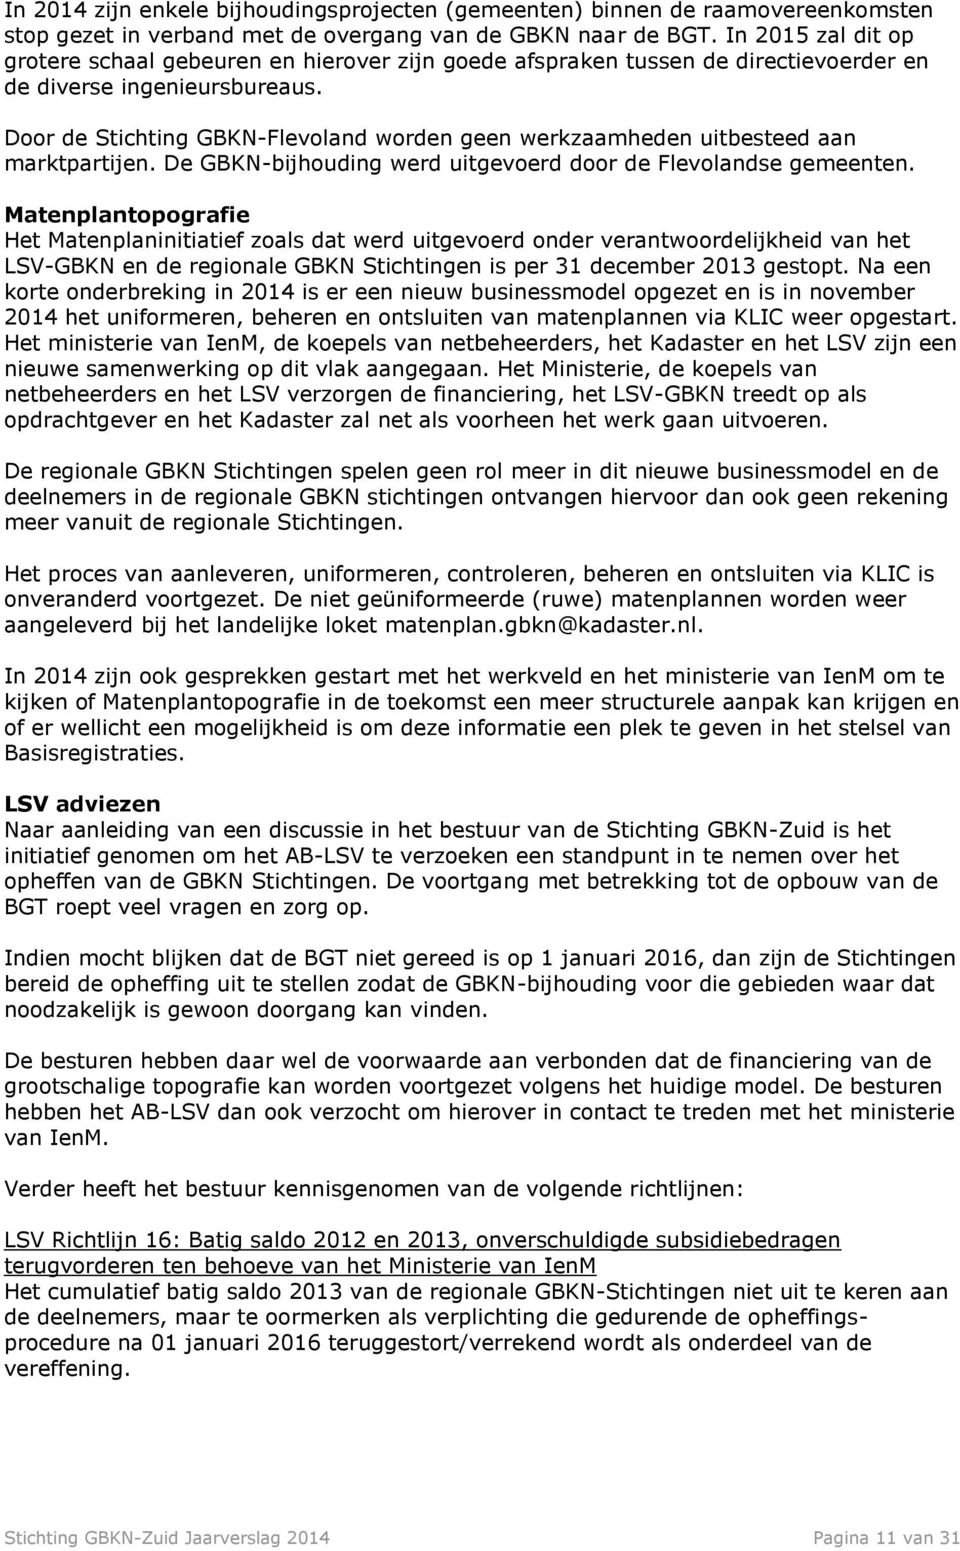 Door de Stichting GBKN-Flevoland worden geen werkzaamheden uitbesteed aan marktpartijen. De GBKN-bijhouding werd uitgevoerd door de Flevolandse gemeenten.